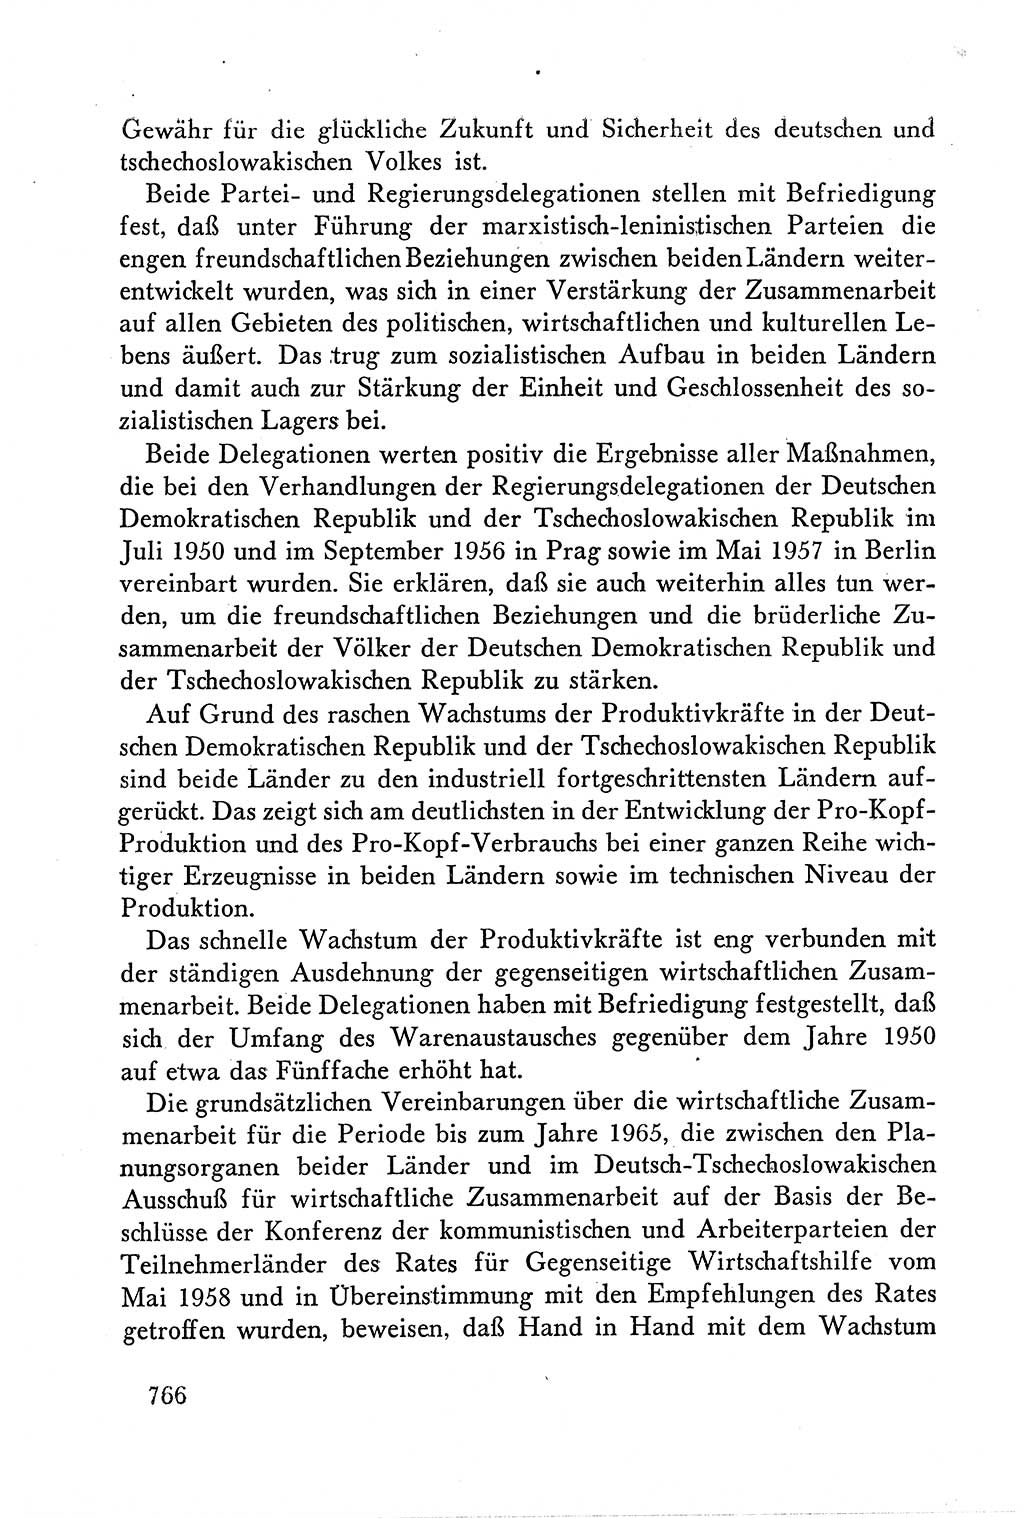 Dokumente der Sozialistischen Einheitspartei Deutschlands (SED) [Deutsche Demokratische Republik (DDR)] 1958-1959, Seite 766 (Dok. SED DDR 1958-1959, S. 766)